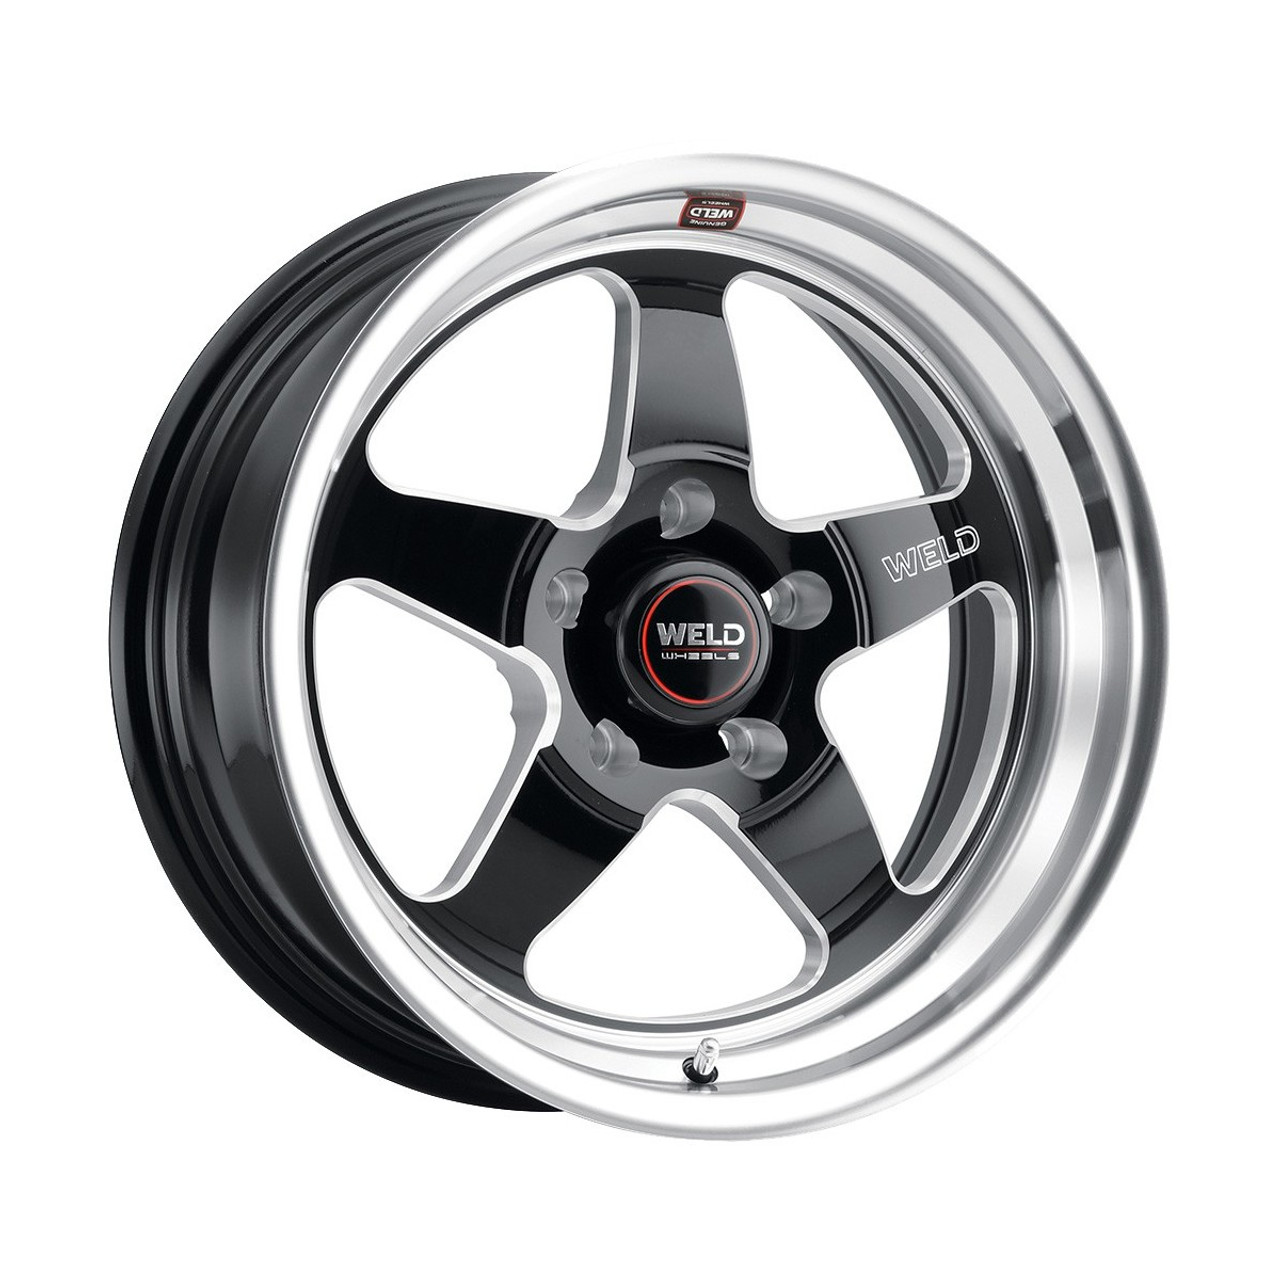 Weld Ventura Drag 17x10 Rear Wheel - CTS-V / Camaro